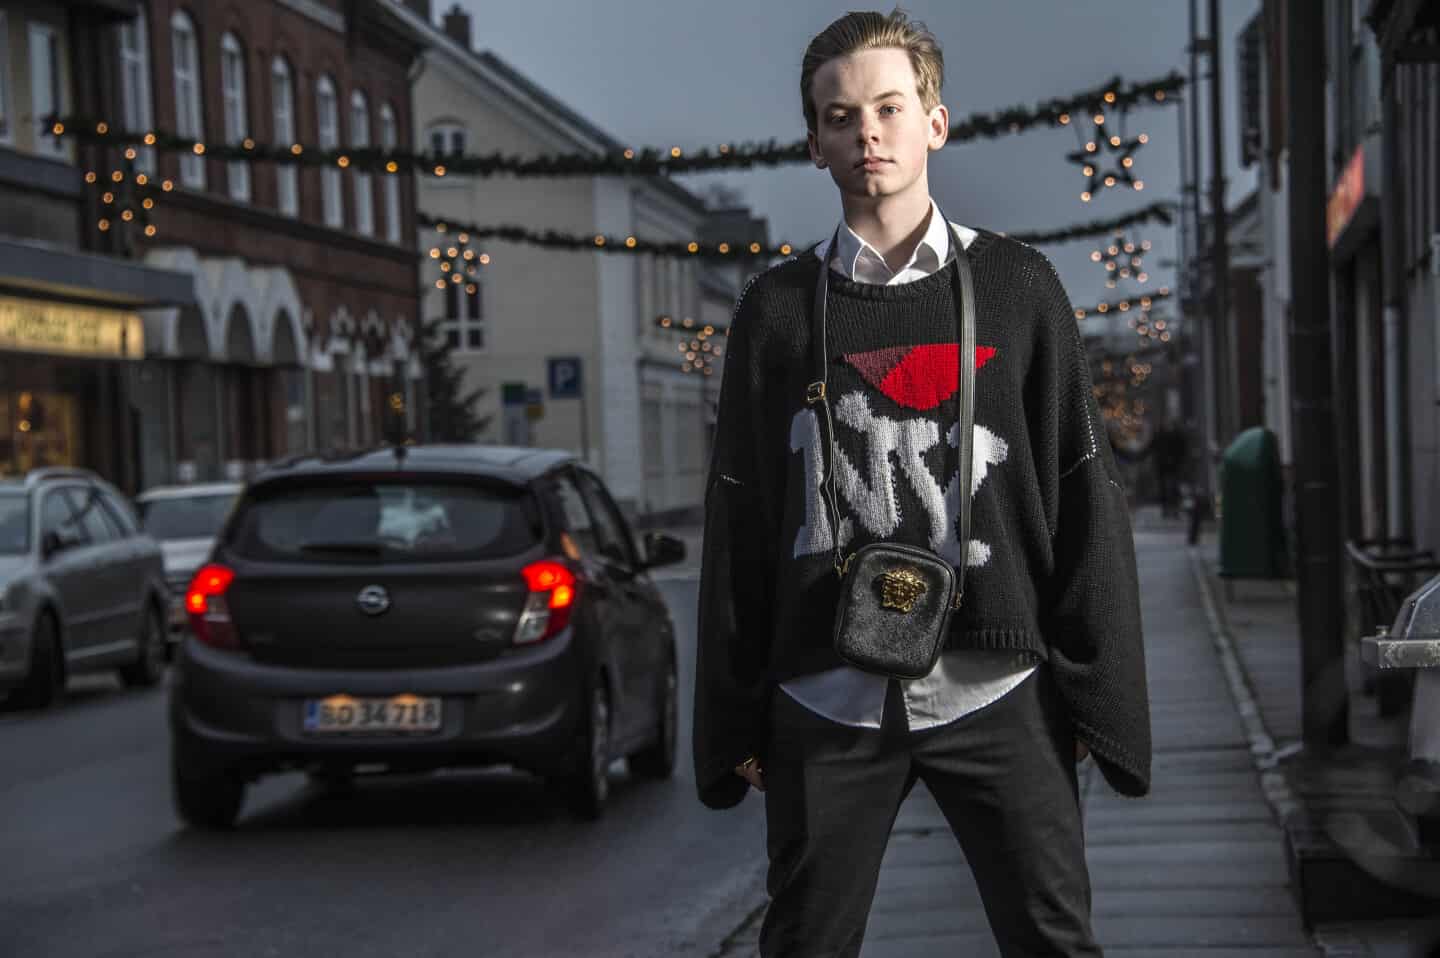 Havn Beroligende middel Onkel eller Mister Sneakerhead og hypebeast: Emil bruger alle sine penge på tøj | fyens.dk